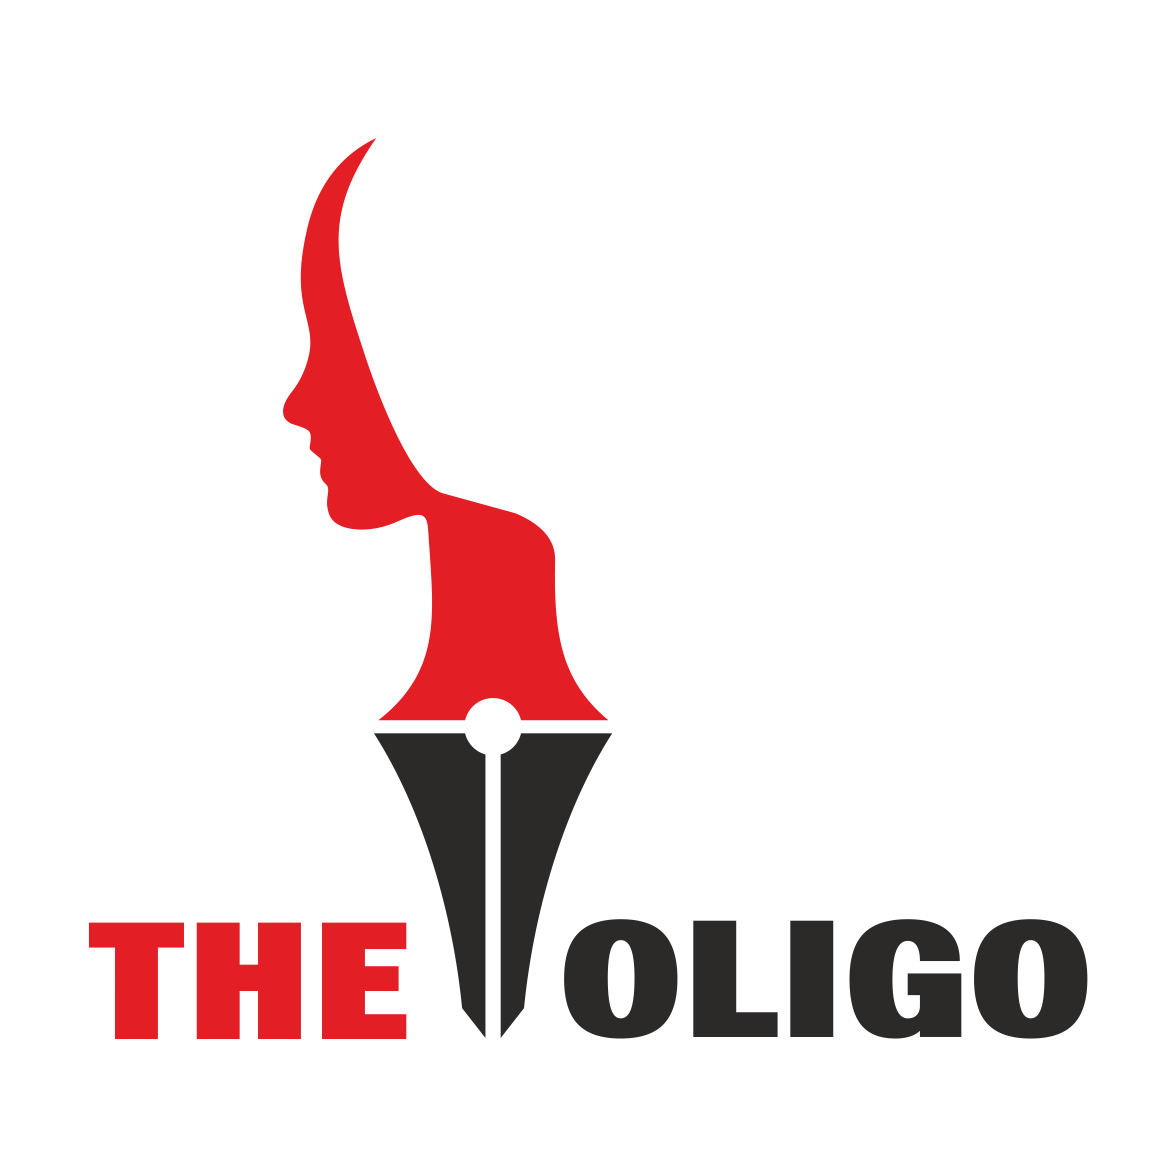 TheOligo